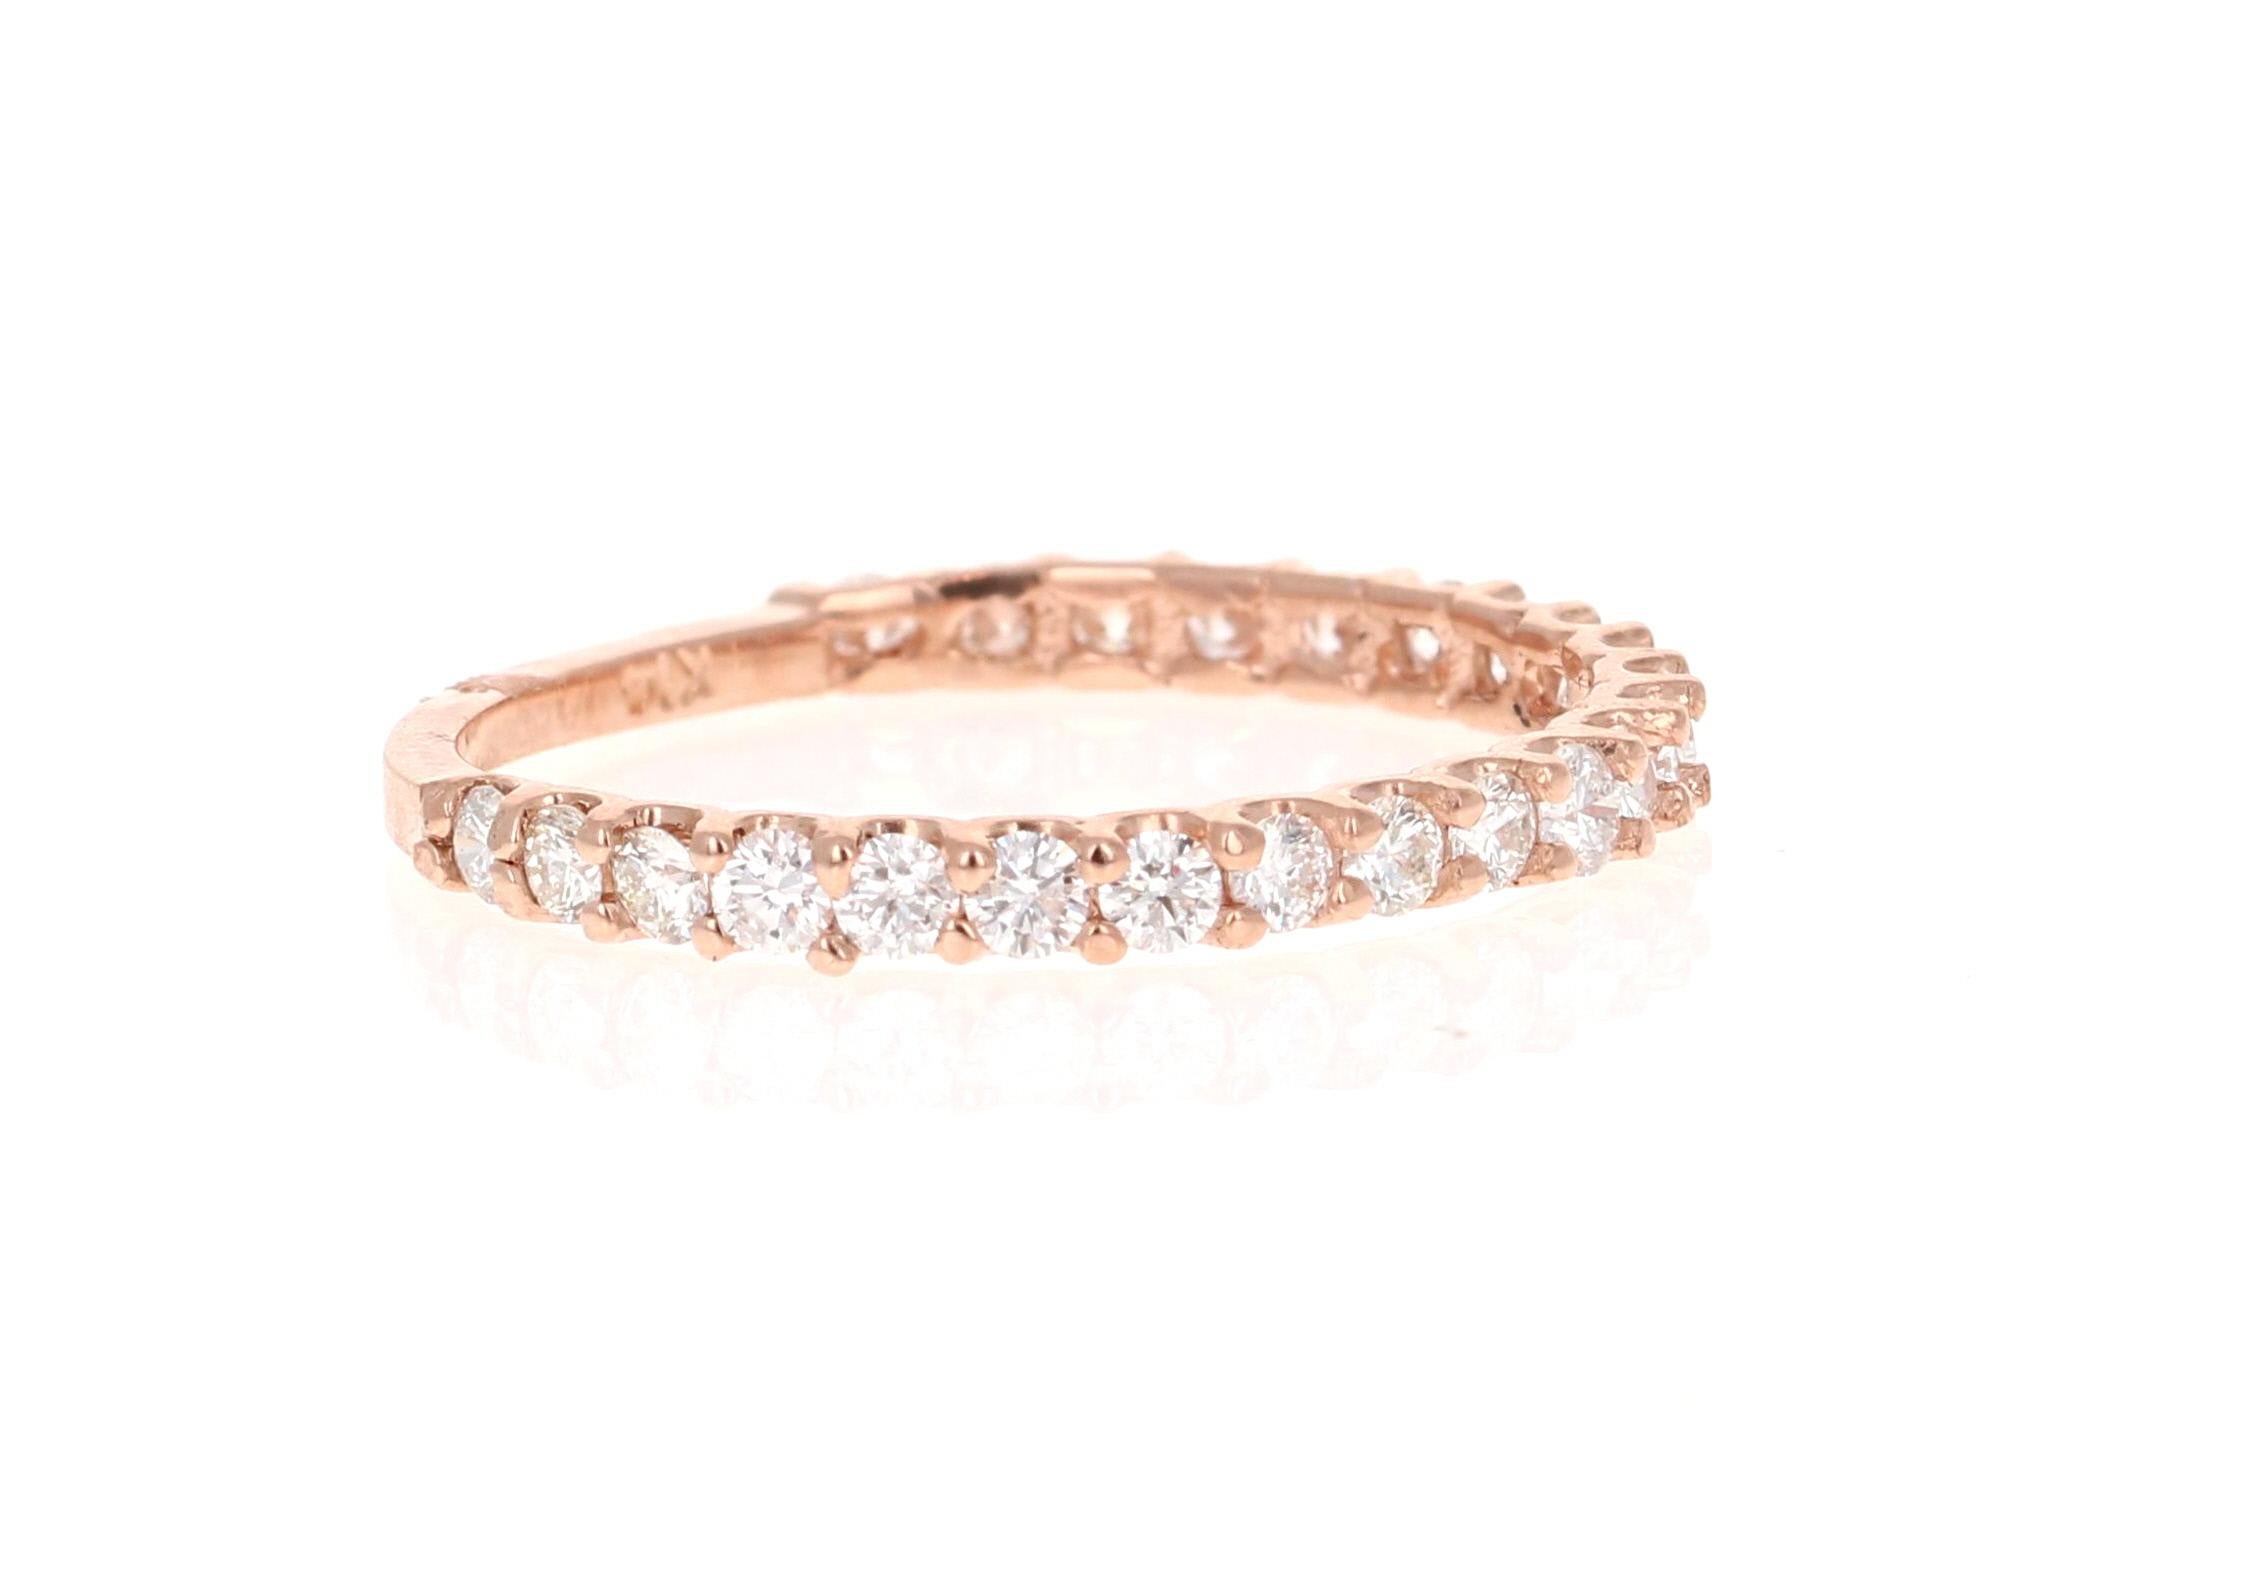 0.bracelet en or rose avec diamant taille ronde de 64 carats !

Ce joli bracelet en diamant de 0,64 carat sera certainement un excellent complément à votre collection d'accessoires !   Il y a 23 diamants de taille ronde qui pèsent 0,64 carats.  Le